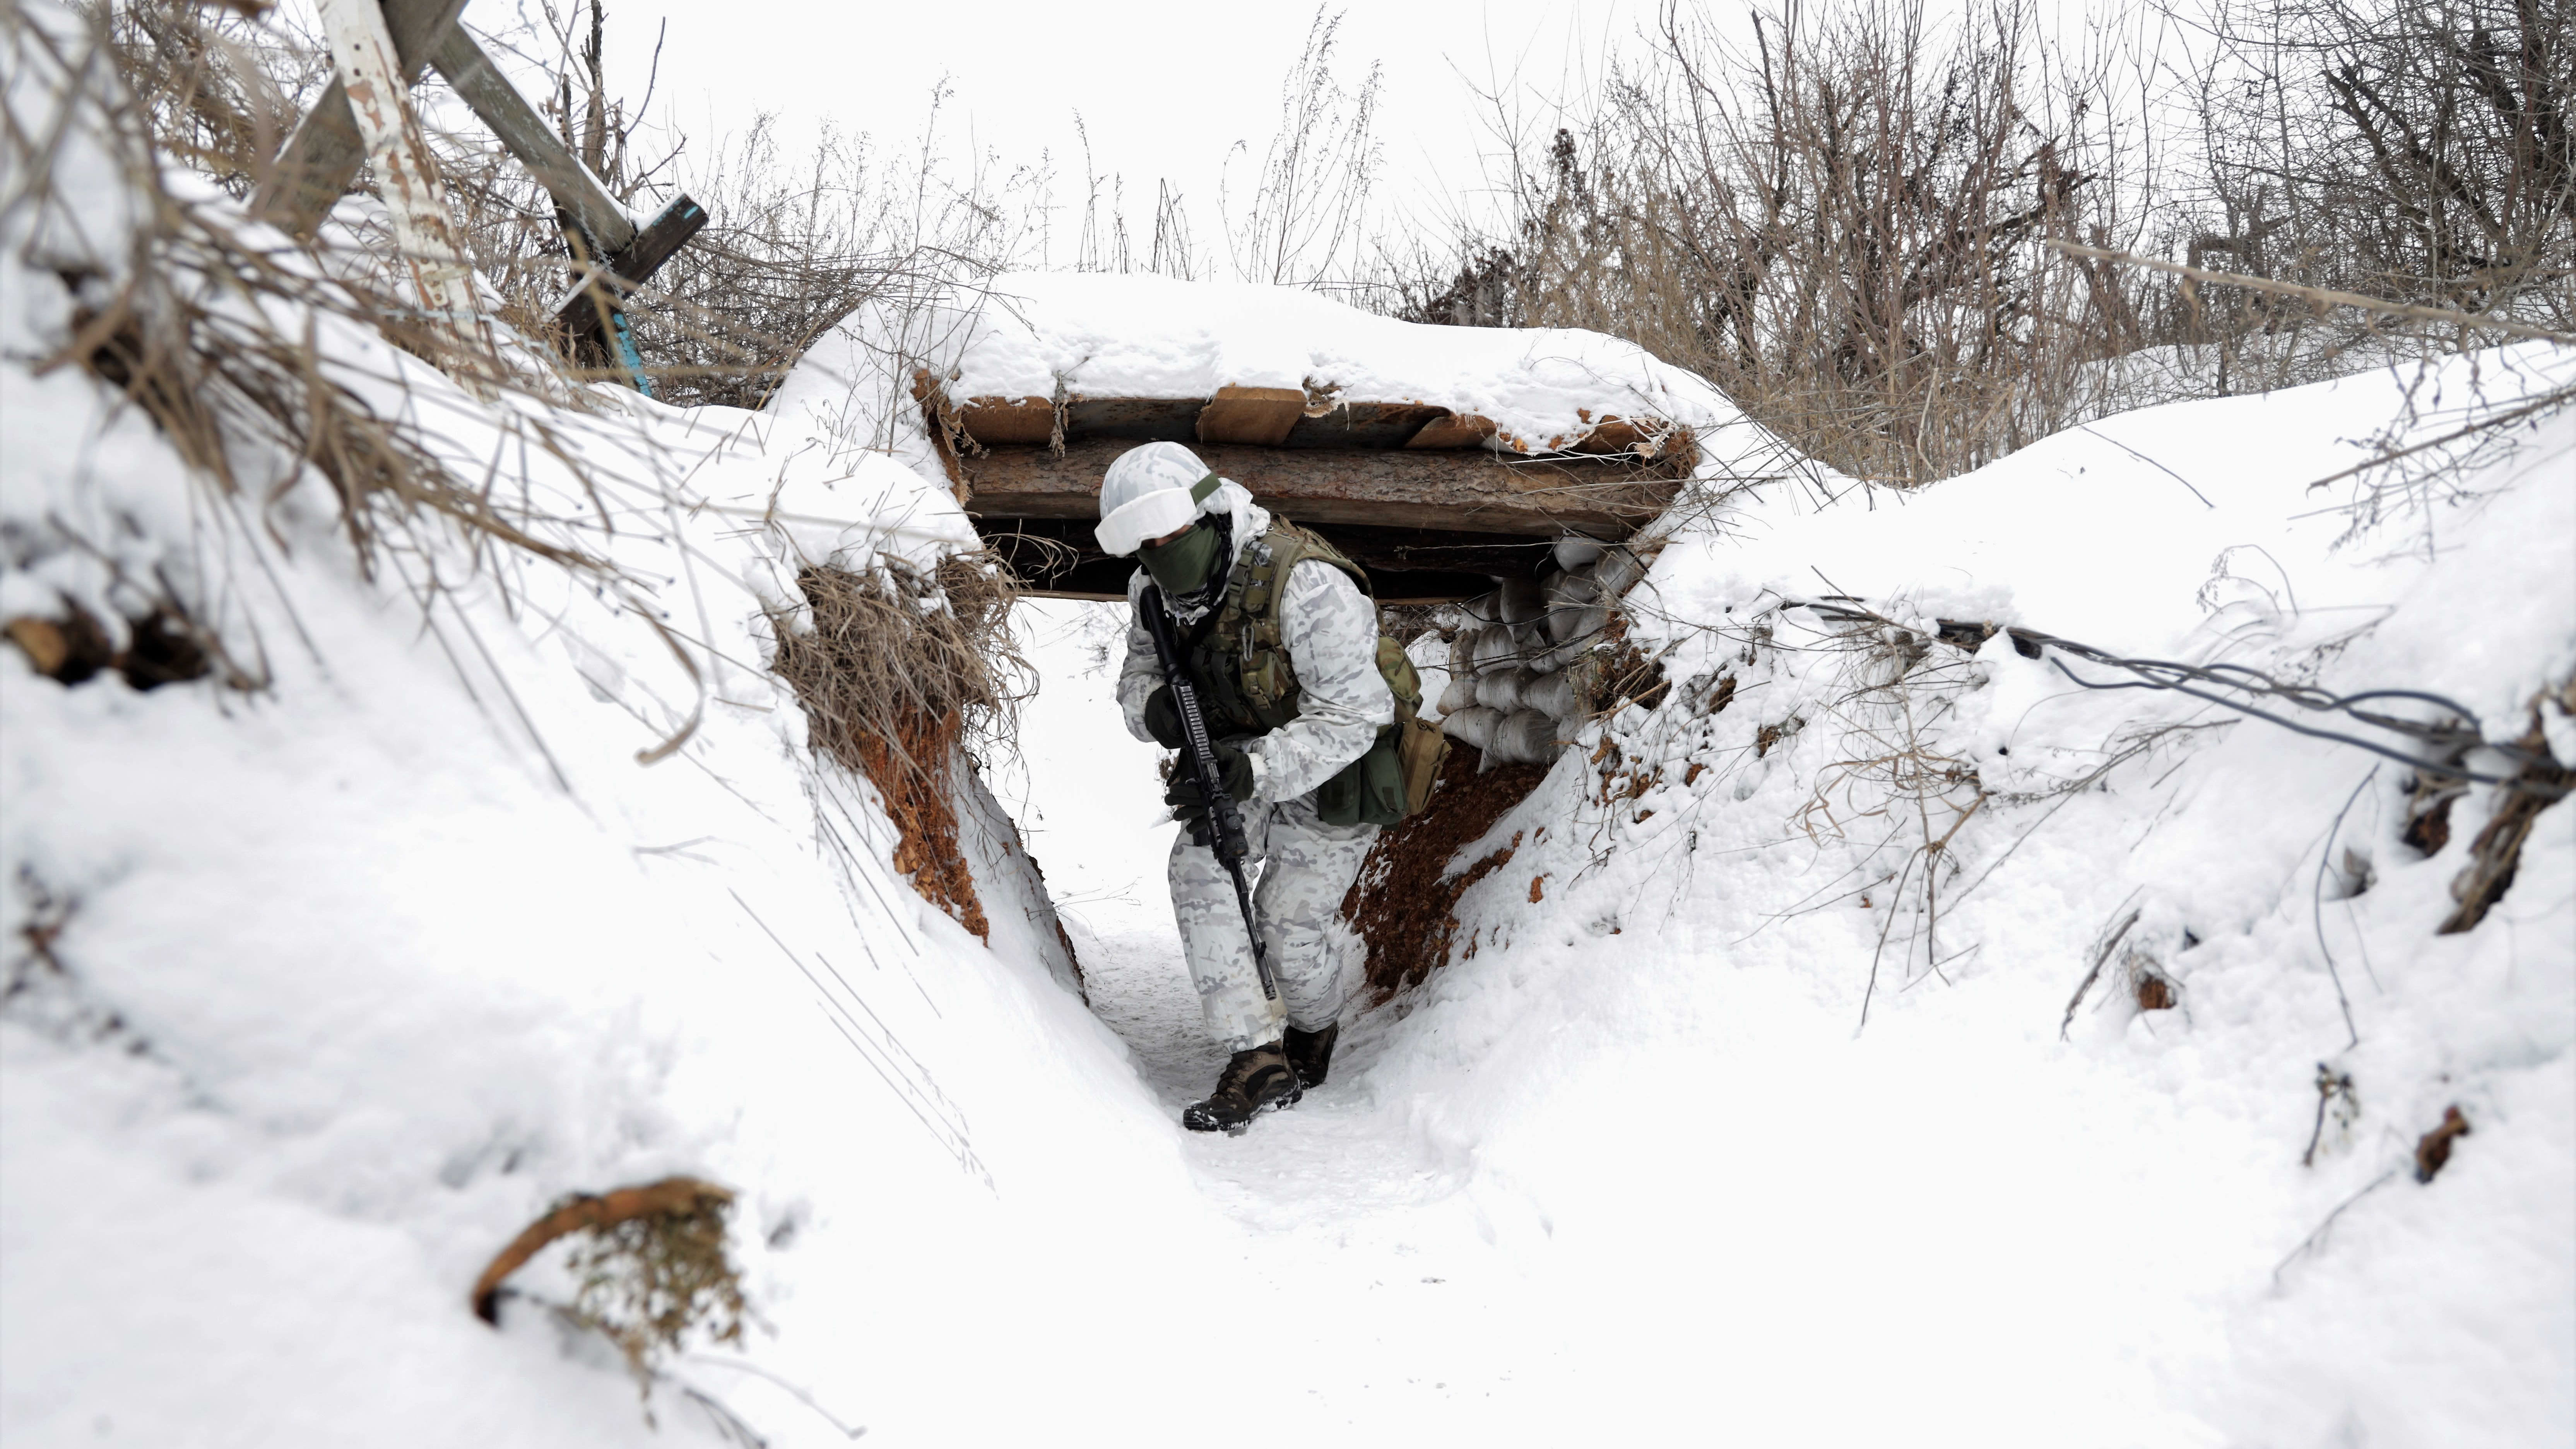 Lumipukuun pukeutunut sotilas kulkee jonkinlaisen rynnäkkökiväärin kanssa lumisessa matalassa juoksuhaudassa. Lumen alta törröttää siellä täällä heiniä.